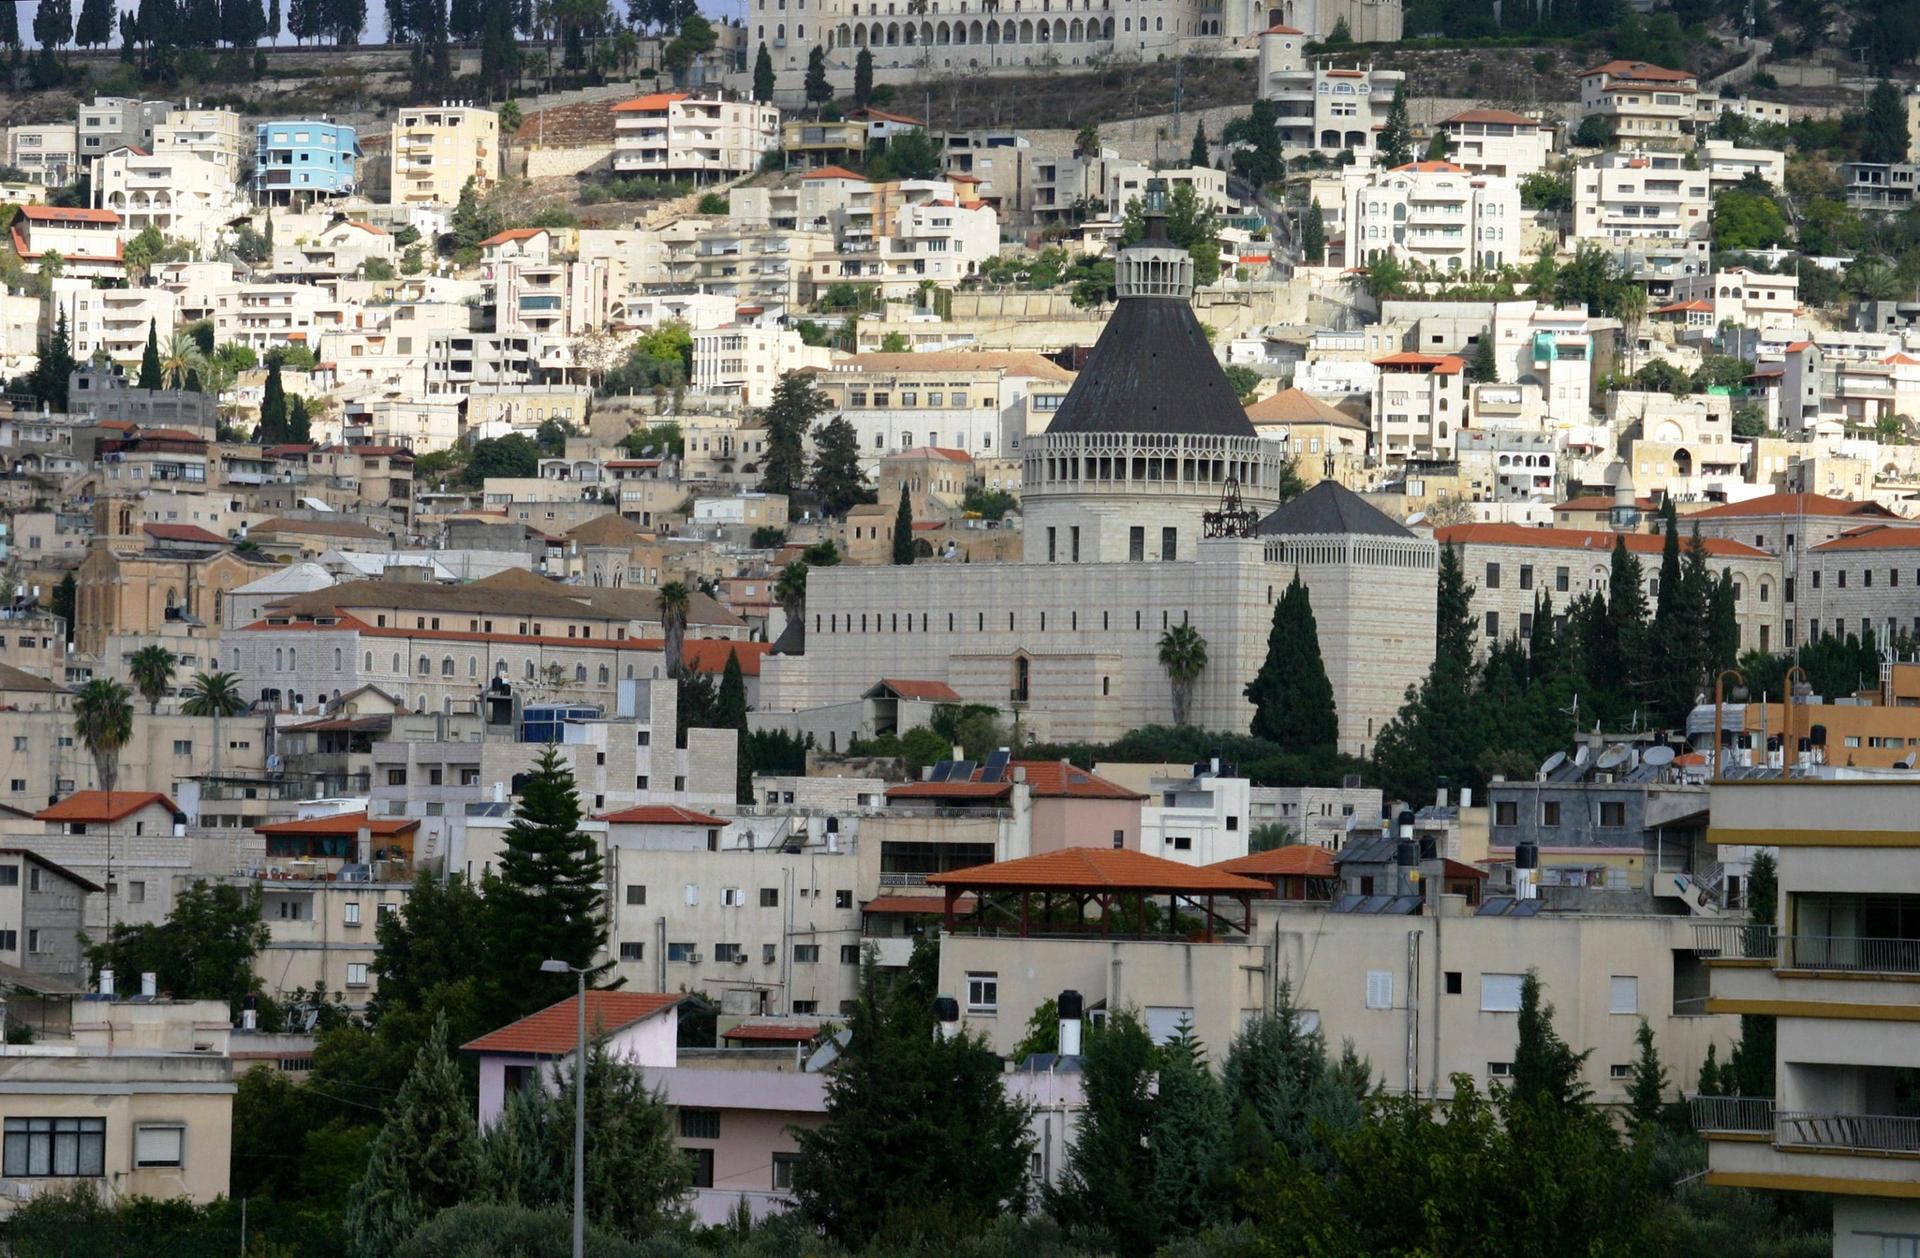 Reise nach Nazareth: Das Geheimnis der Verkündigung neu erleben